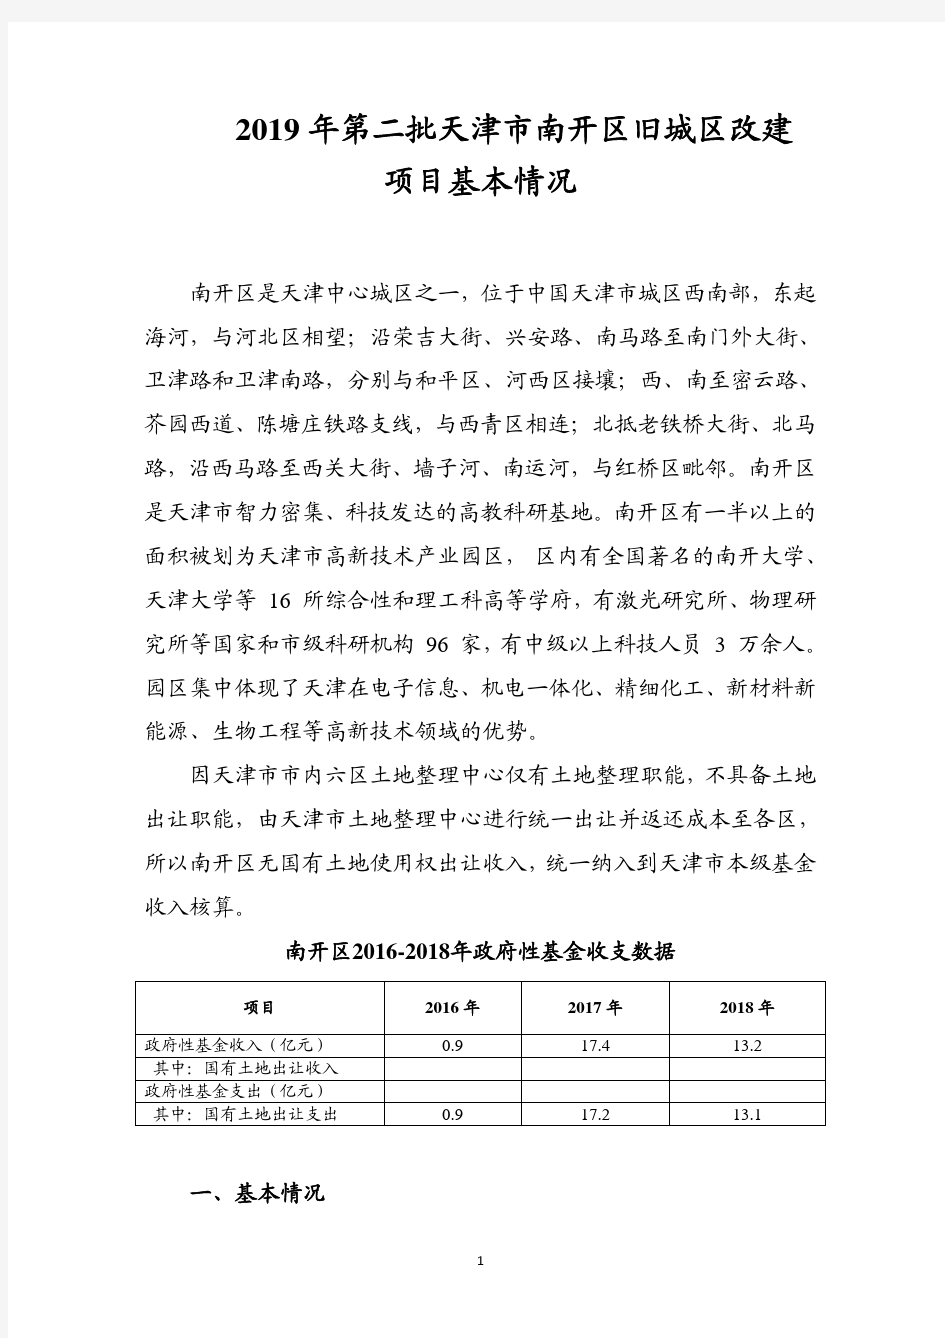 2019年第二批天津市南开区旧城区改建项目基本情况